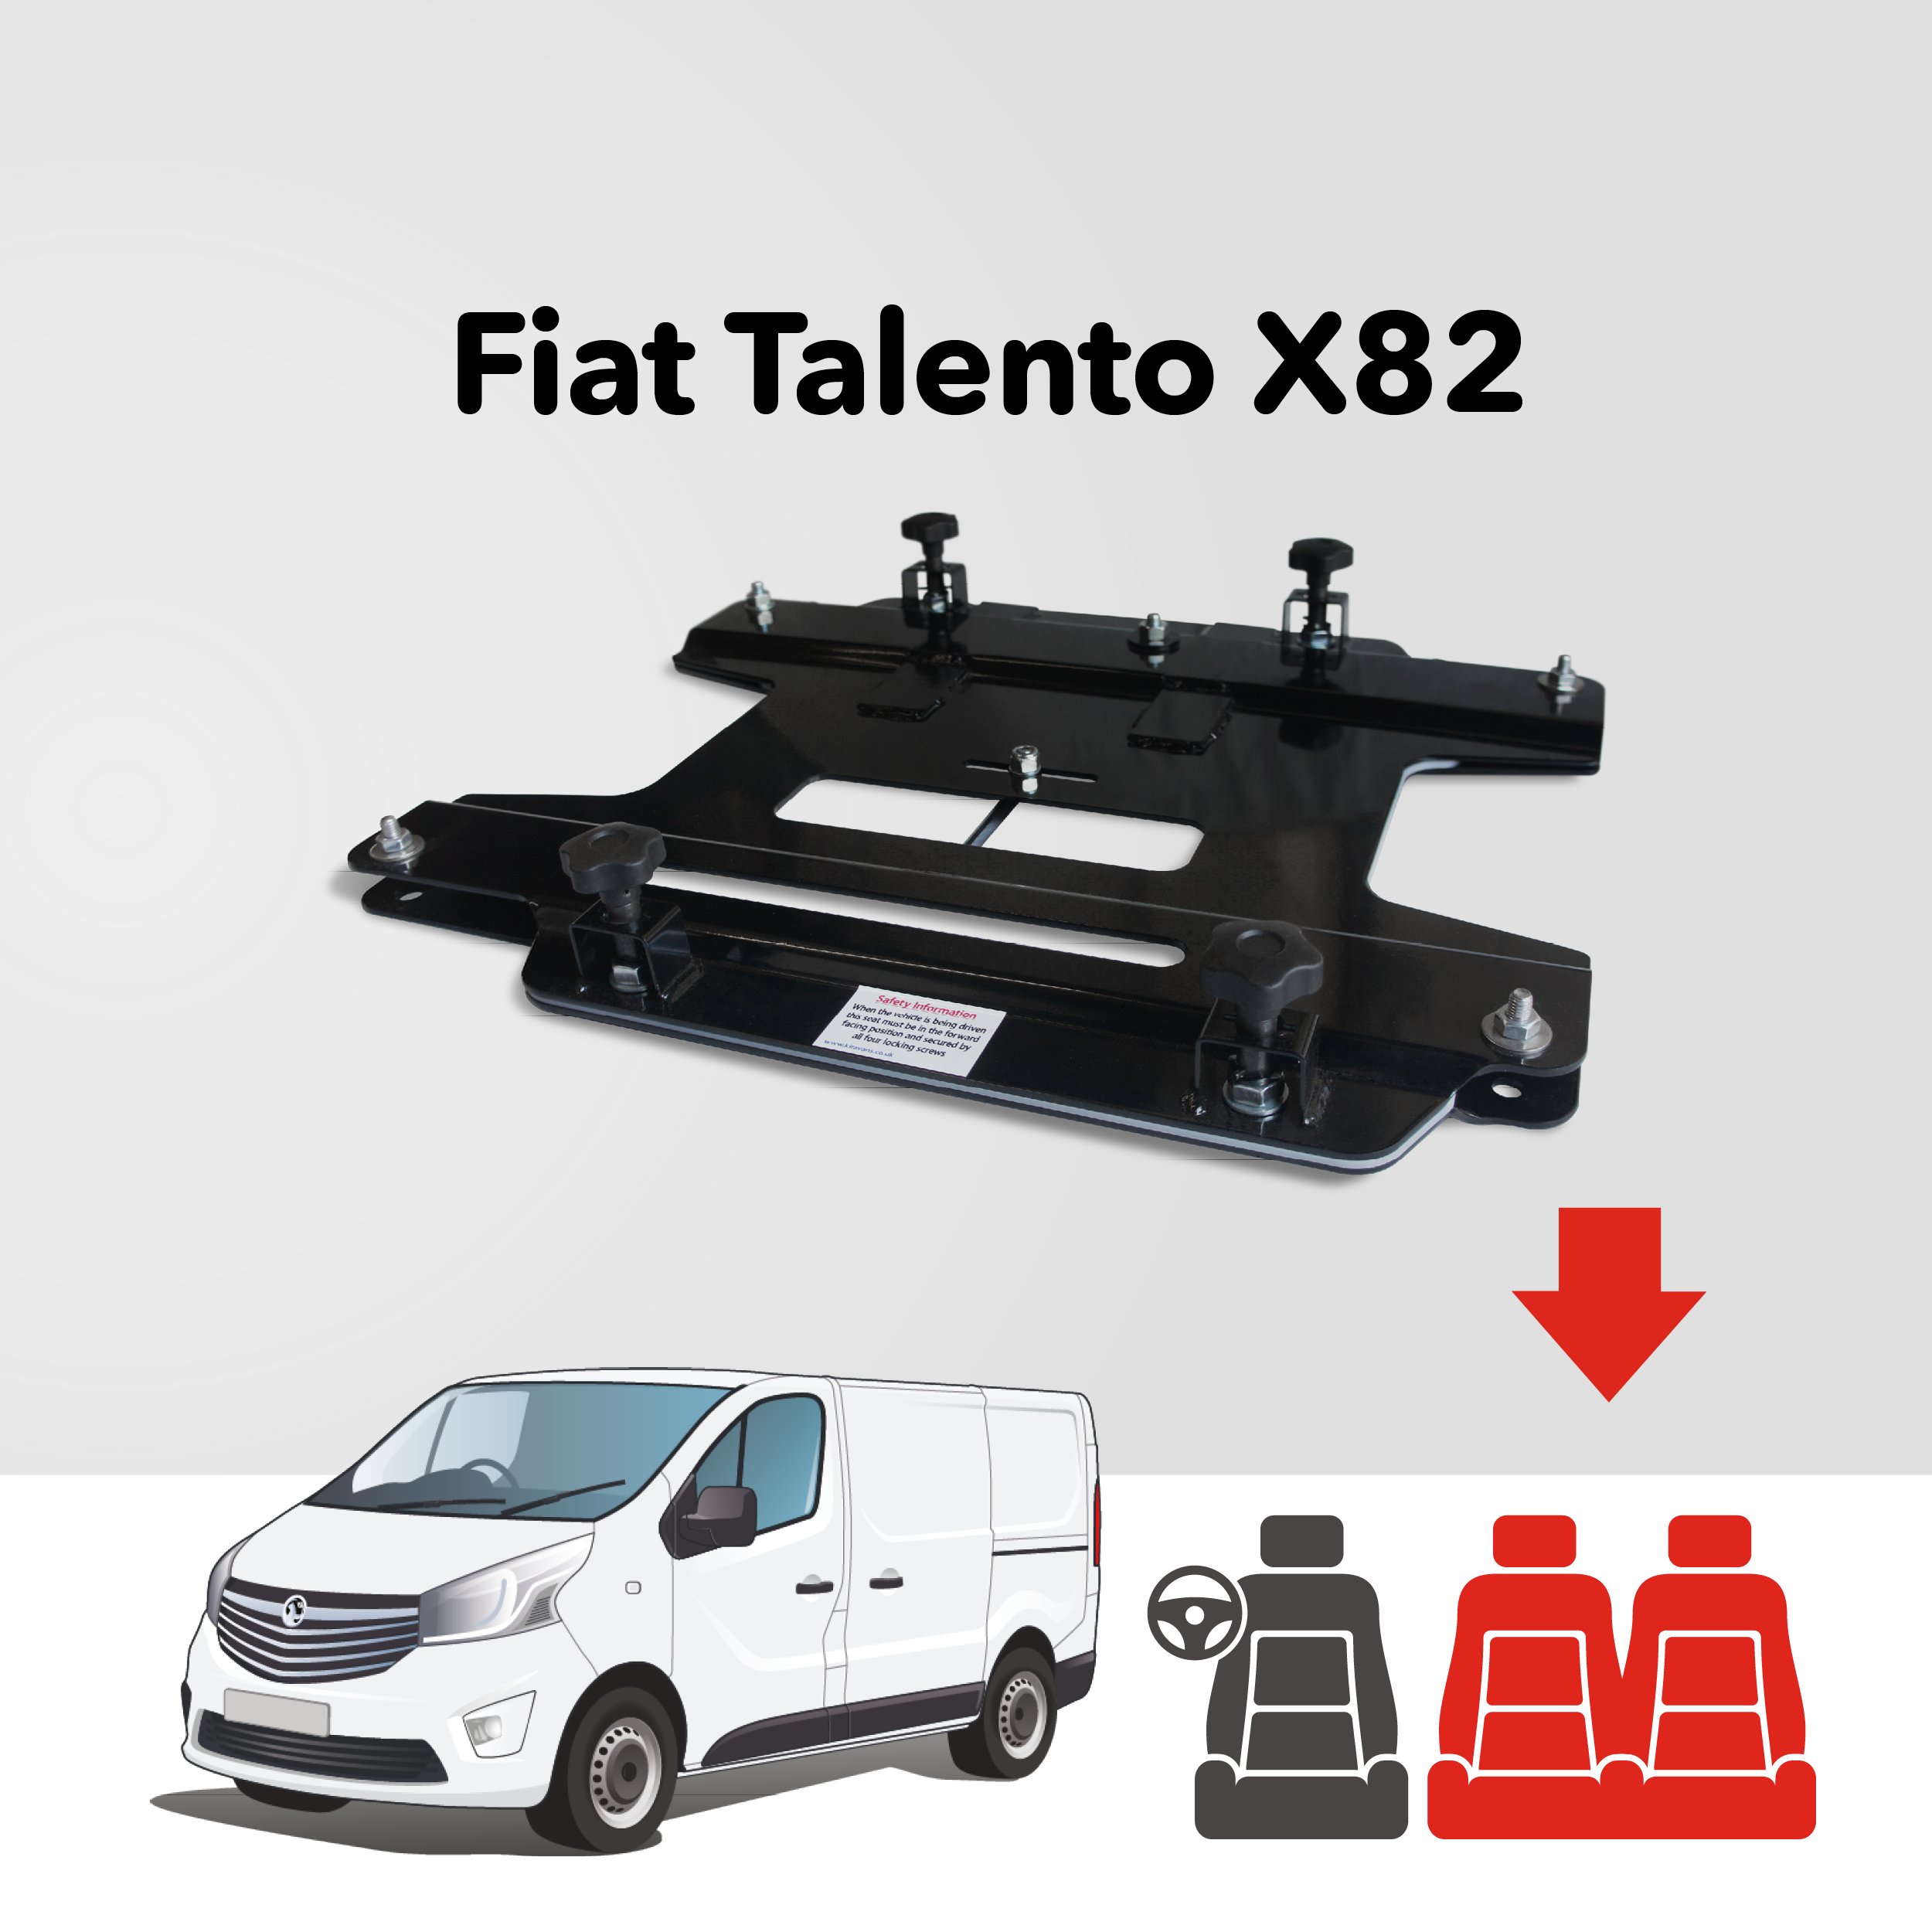 Base tournante double banquette Kiravans - Fiat Talento 2016-2022 (UE - Conduite à gauche)